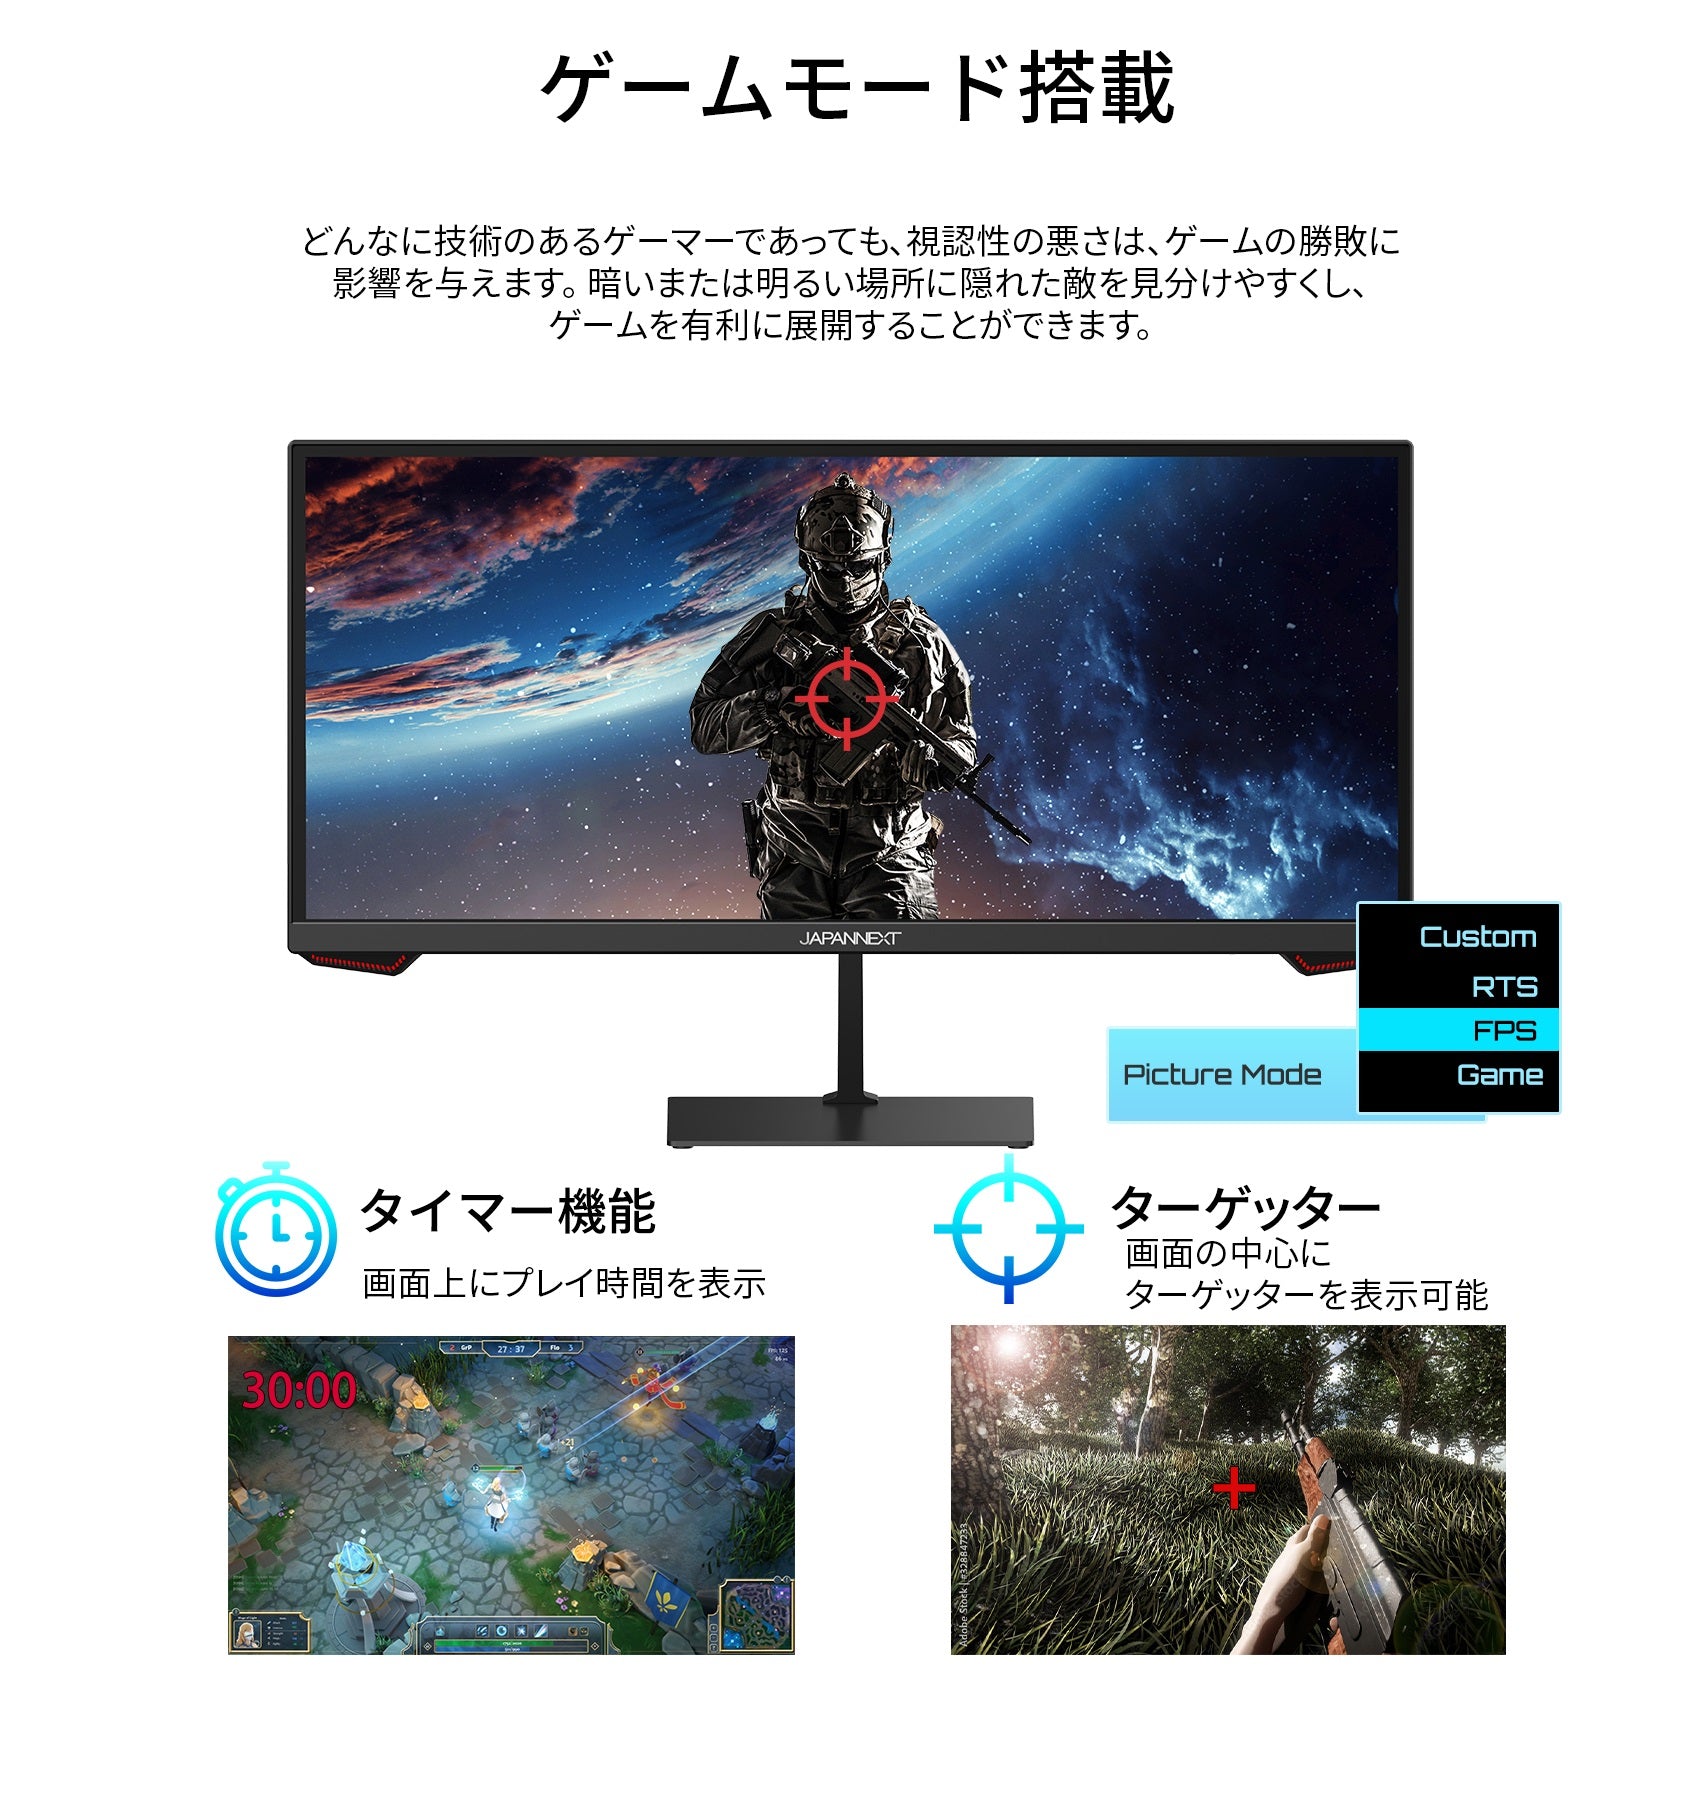 JAPANNEXT 23.3インチ ワイドFHD(2560 x 1080) 200Hz対応 ゲーミング